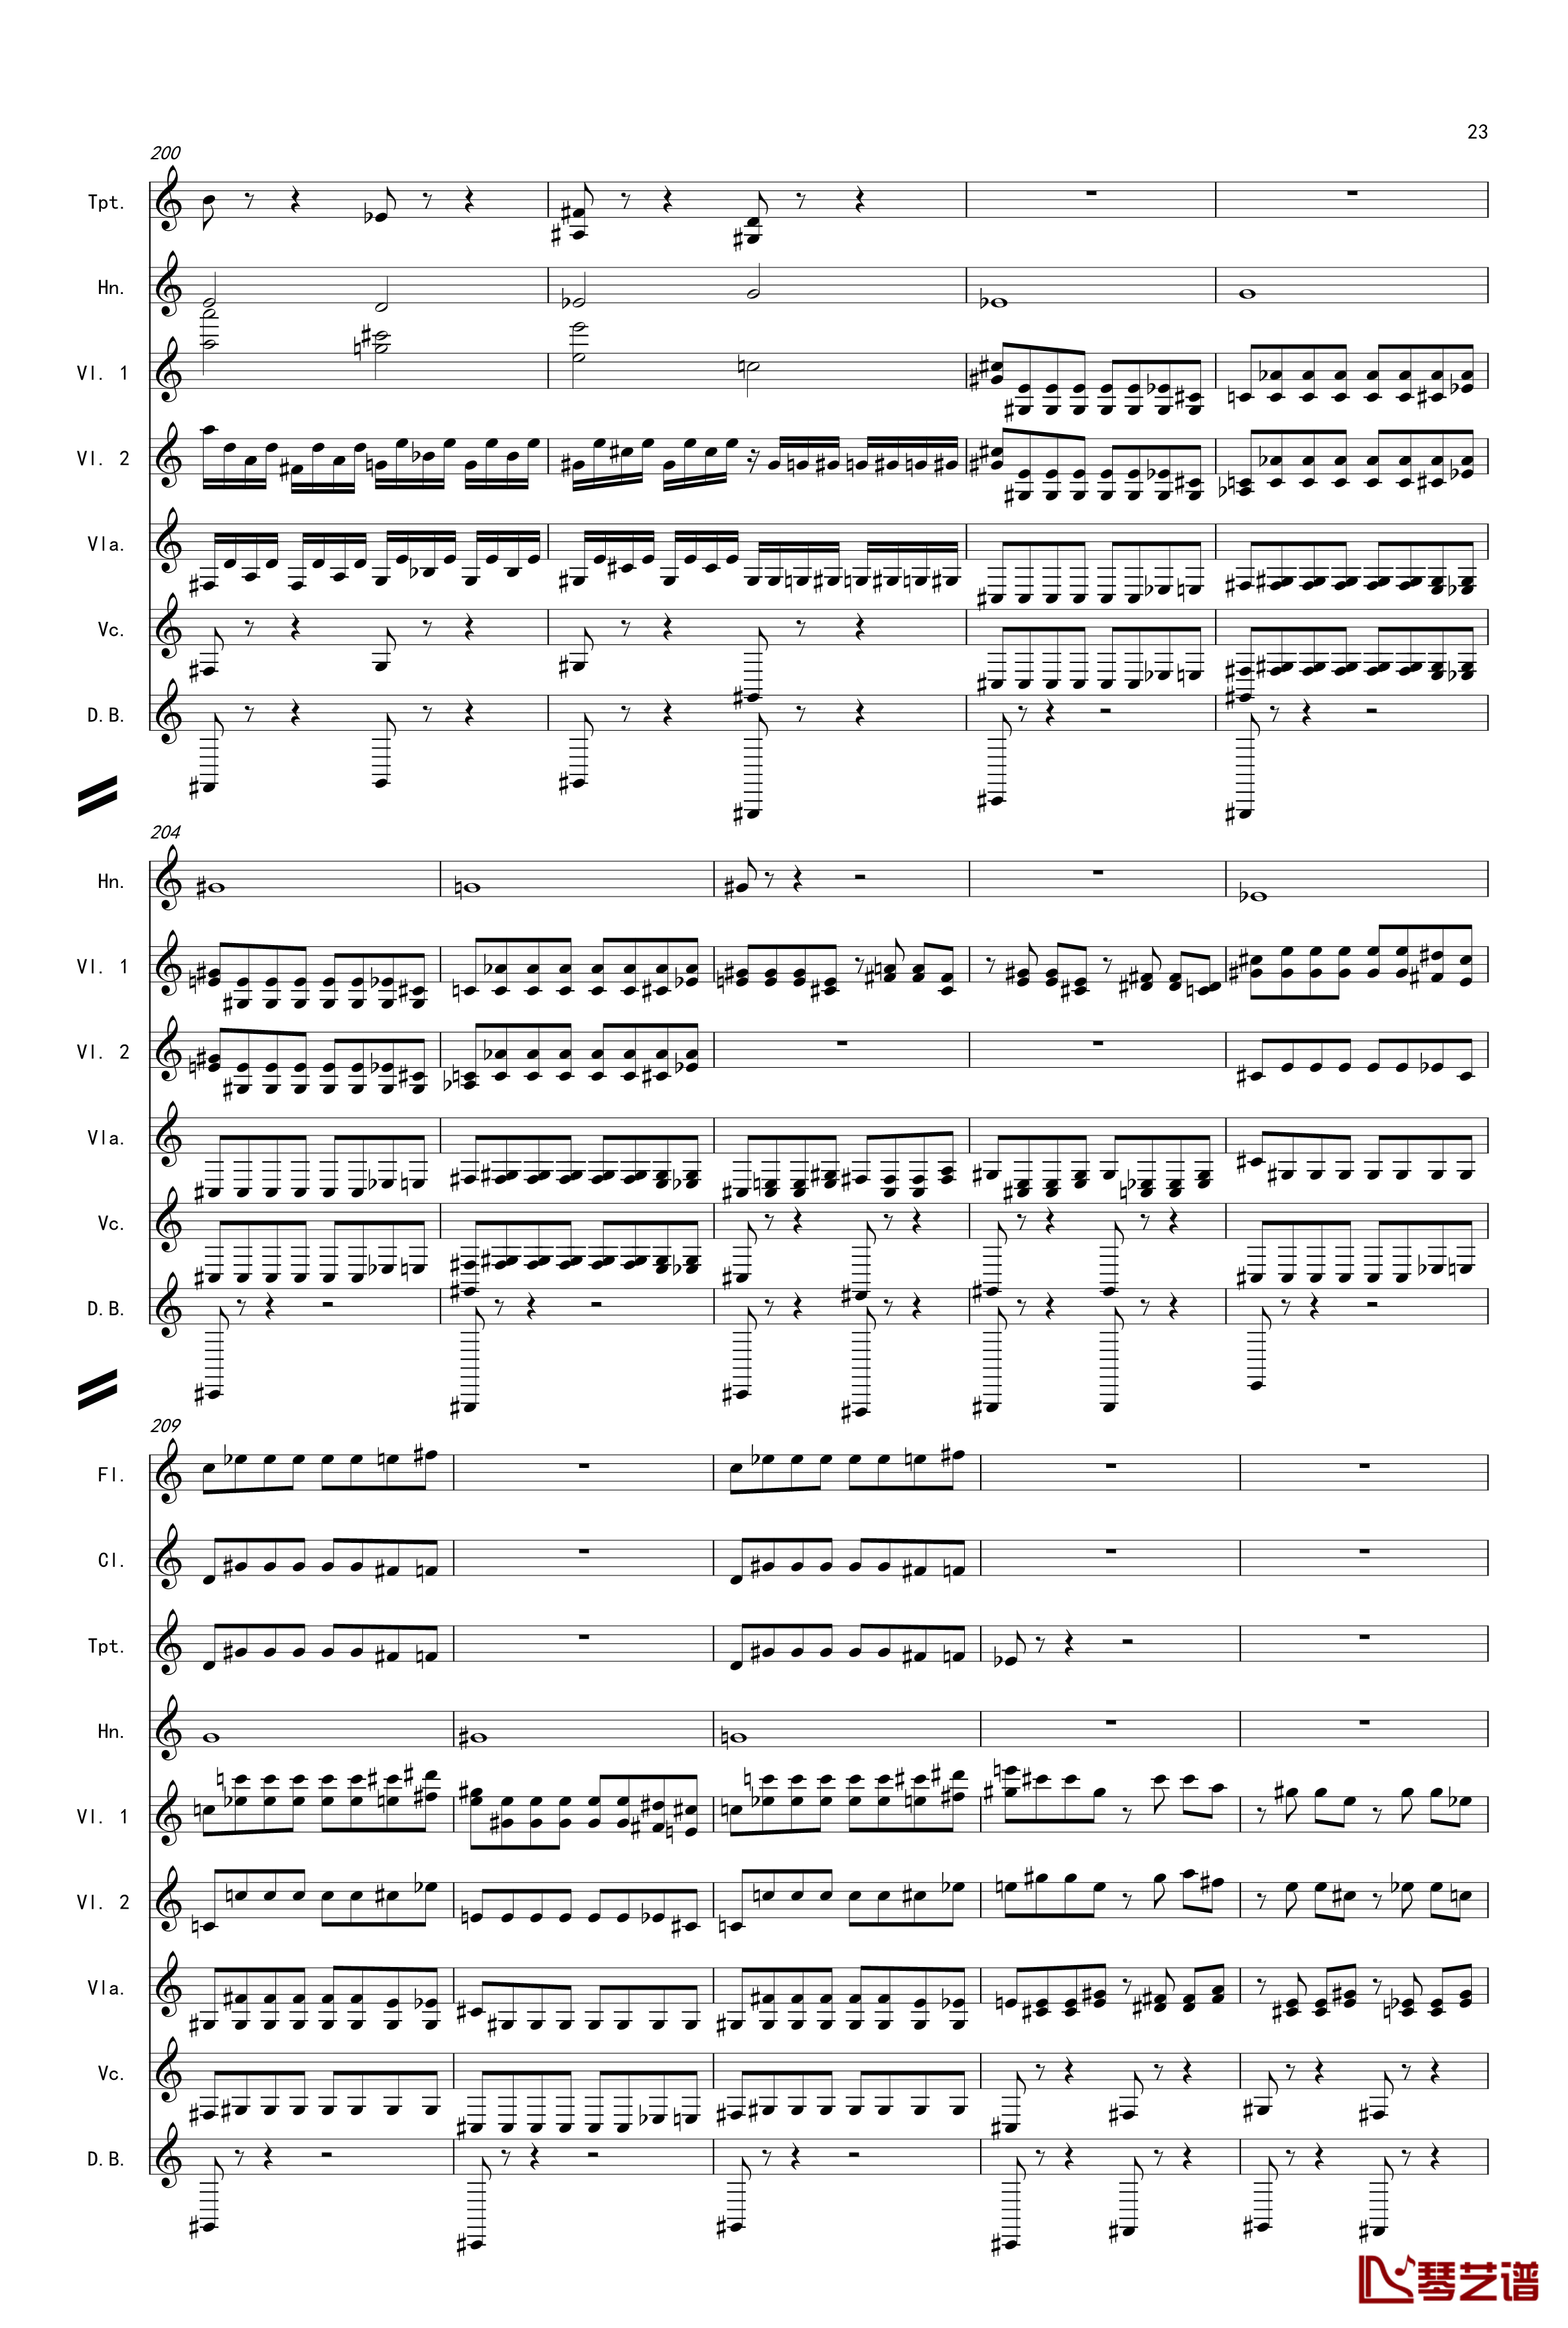 奏鸣曲之交响第14首Ⅲ钢琴谱-贝多芬-beethoven23